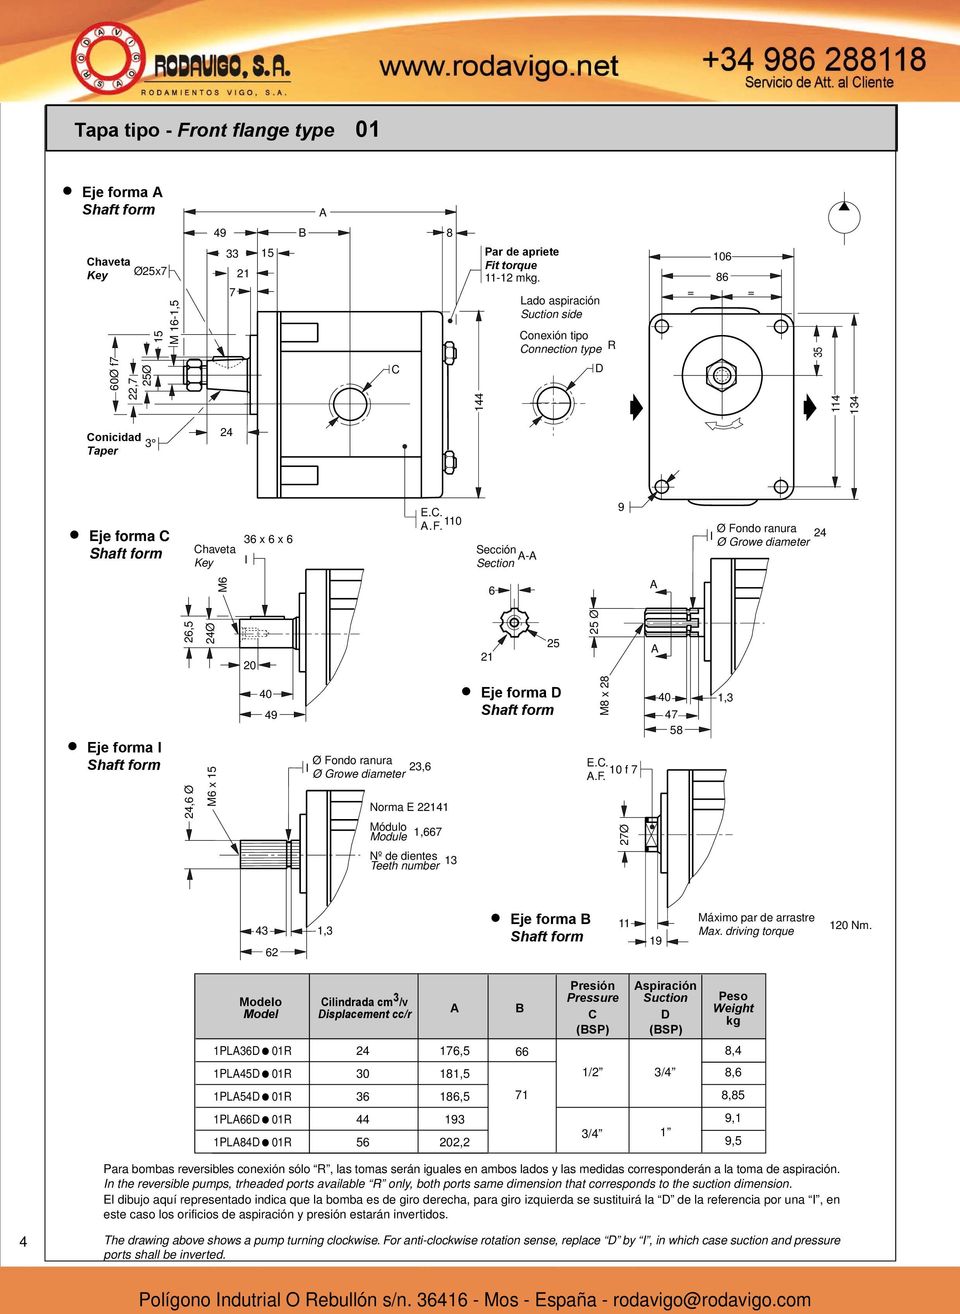 Modelo Model ilindrada cm /v isplacement cc/r A B Presión Pressure (BSP) Aspiración Suction (BSP) Peso Weight kg PLA 0R,, PLA 0R 0, / /, PLA 0R,, PLA PLA 0R 0R 0, /,, Para bombas reversibles conexión